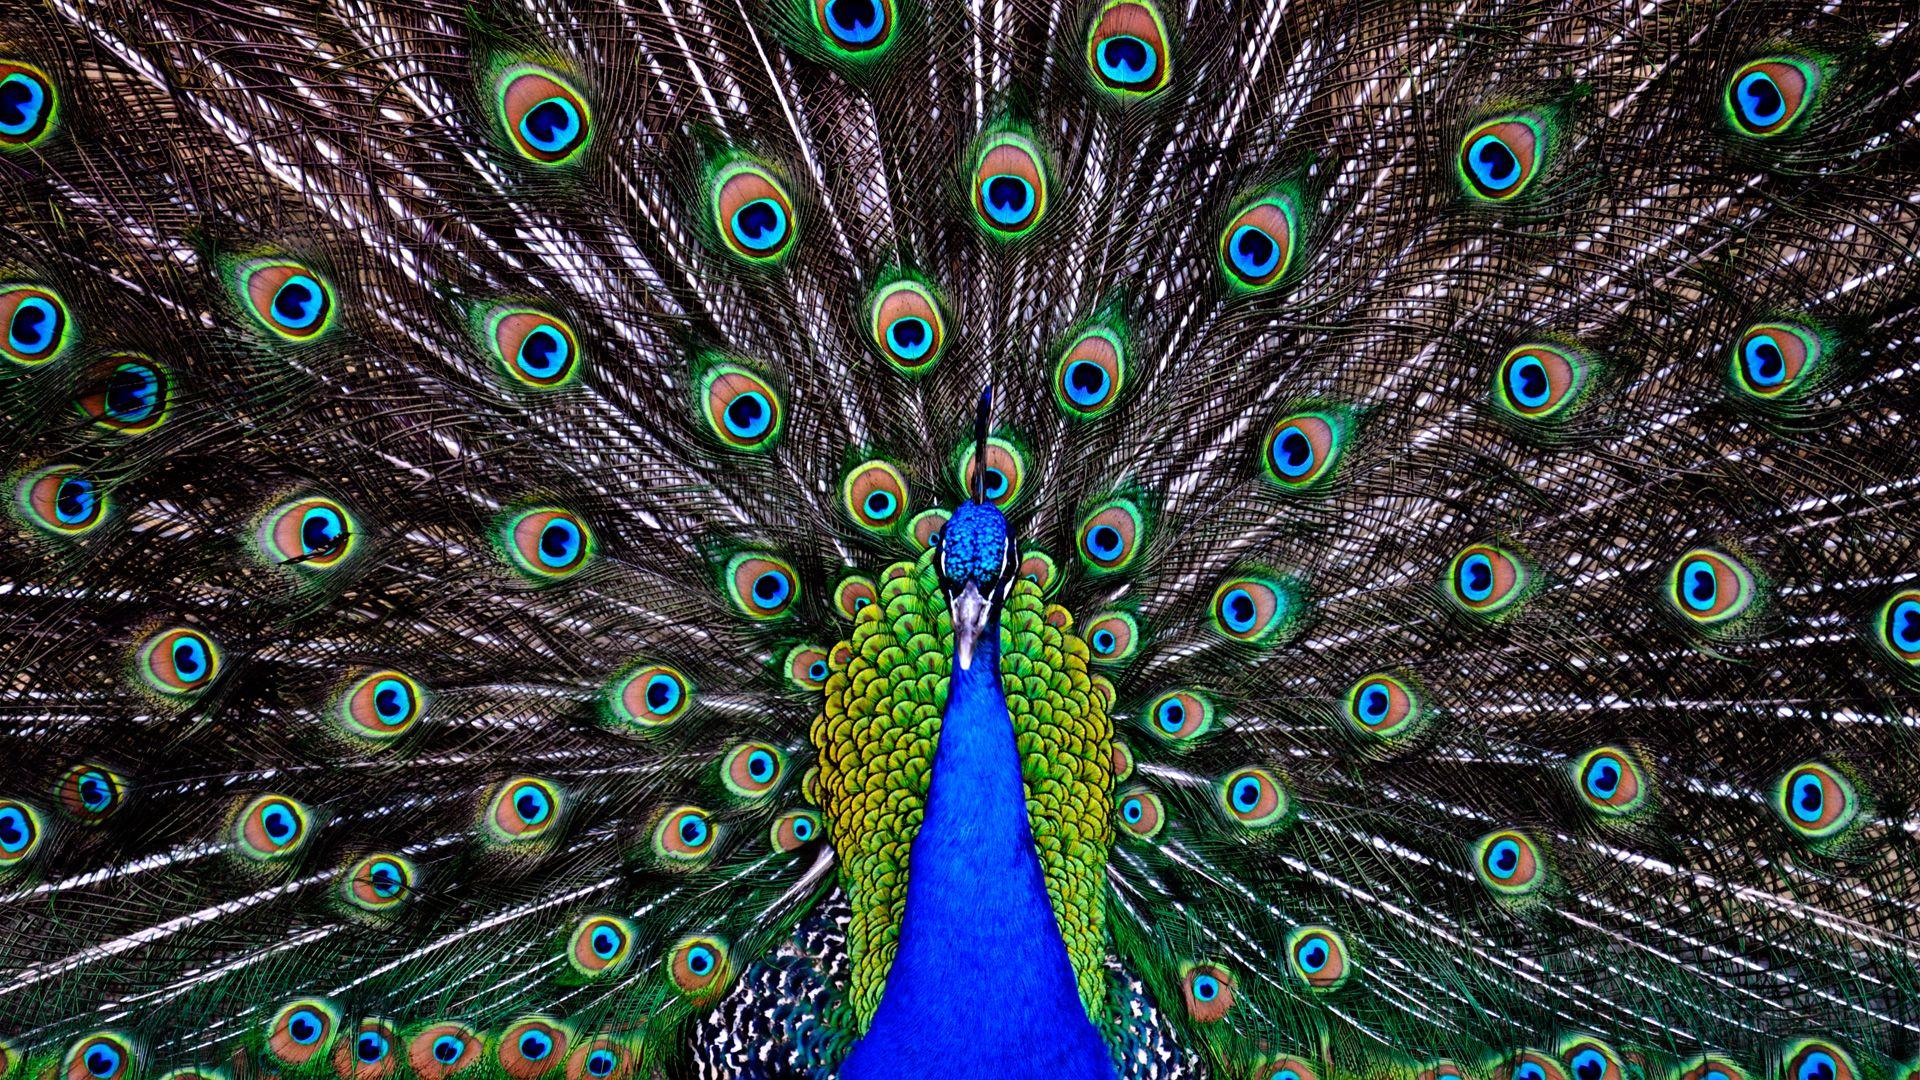 Peacock Feather Wallpaper HD.com Best Wallpaper